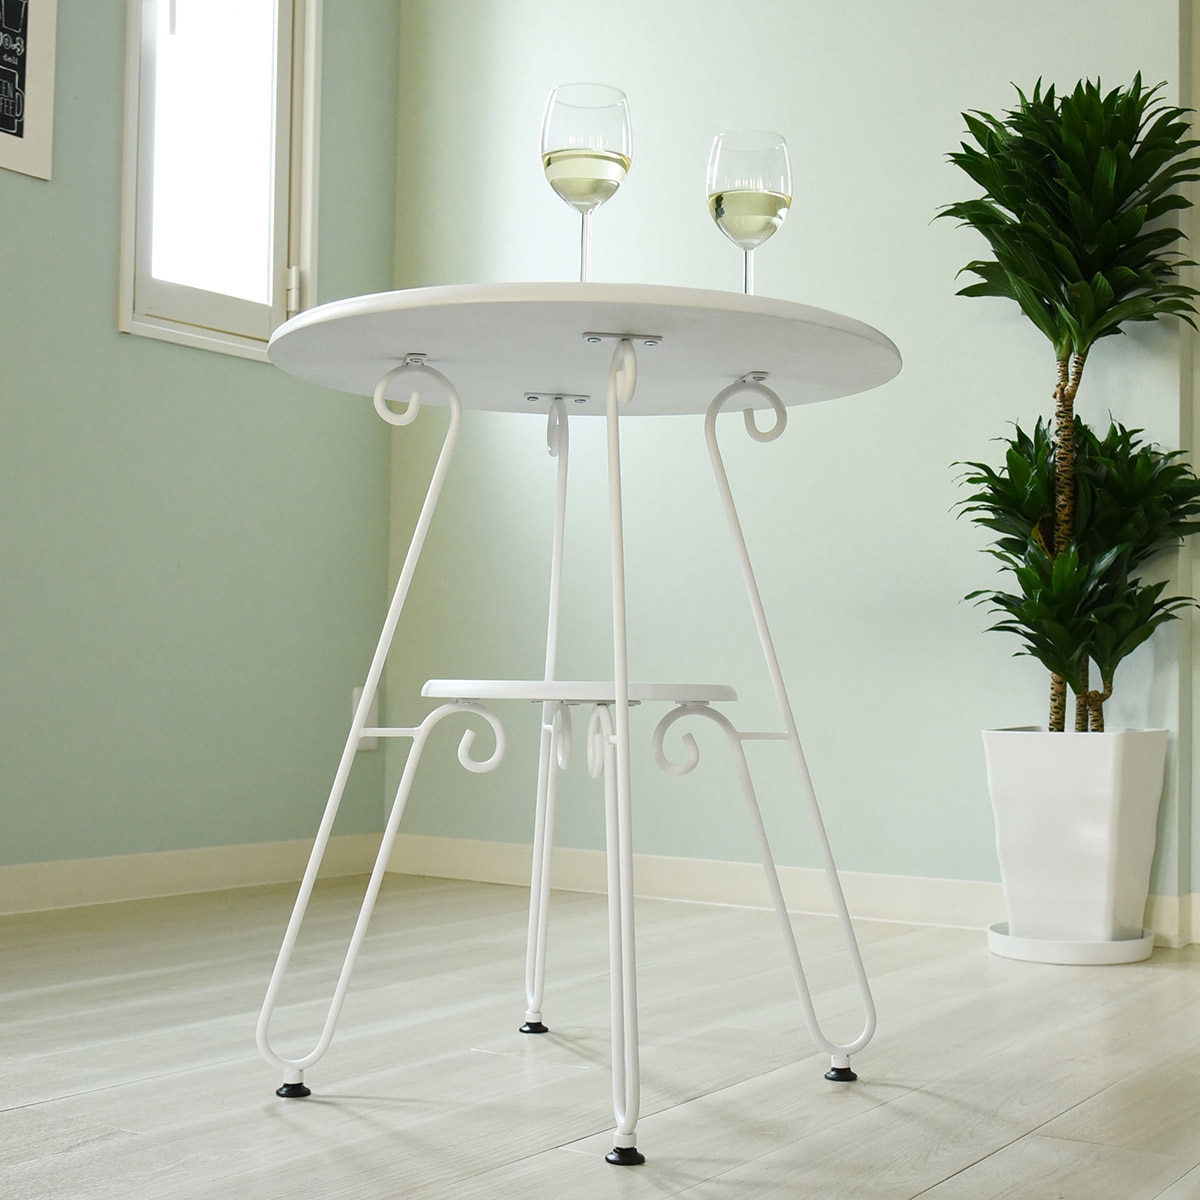 高級品市場 カフェテーブル 幅60cm アンティーク風 丸テーブル ロートアイアン 高さ70cm テーブル